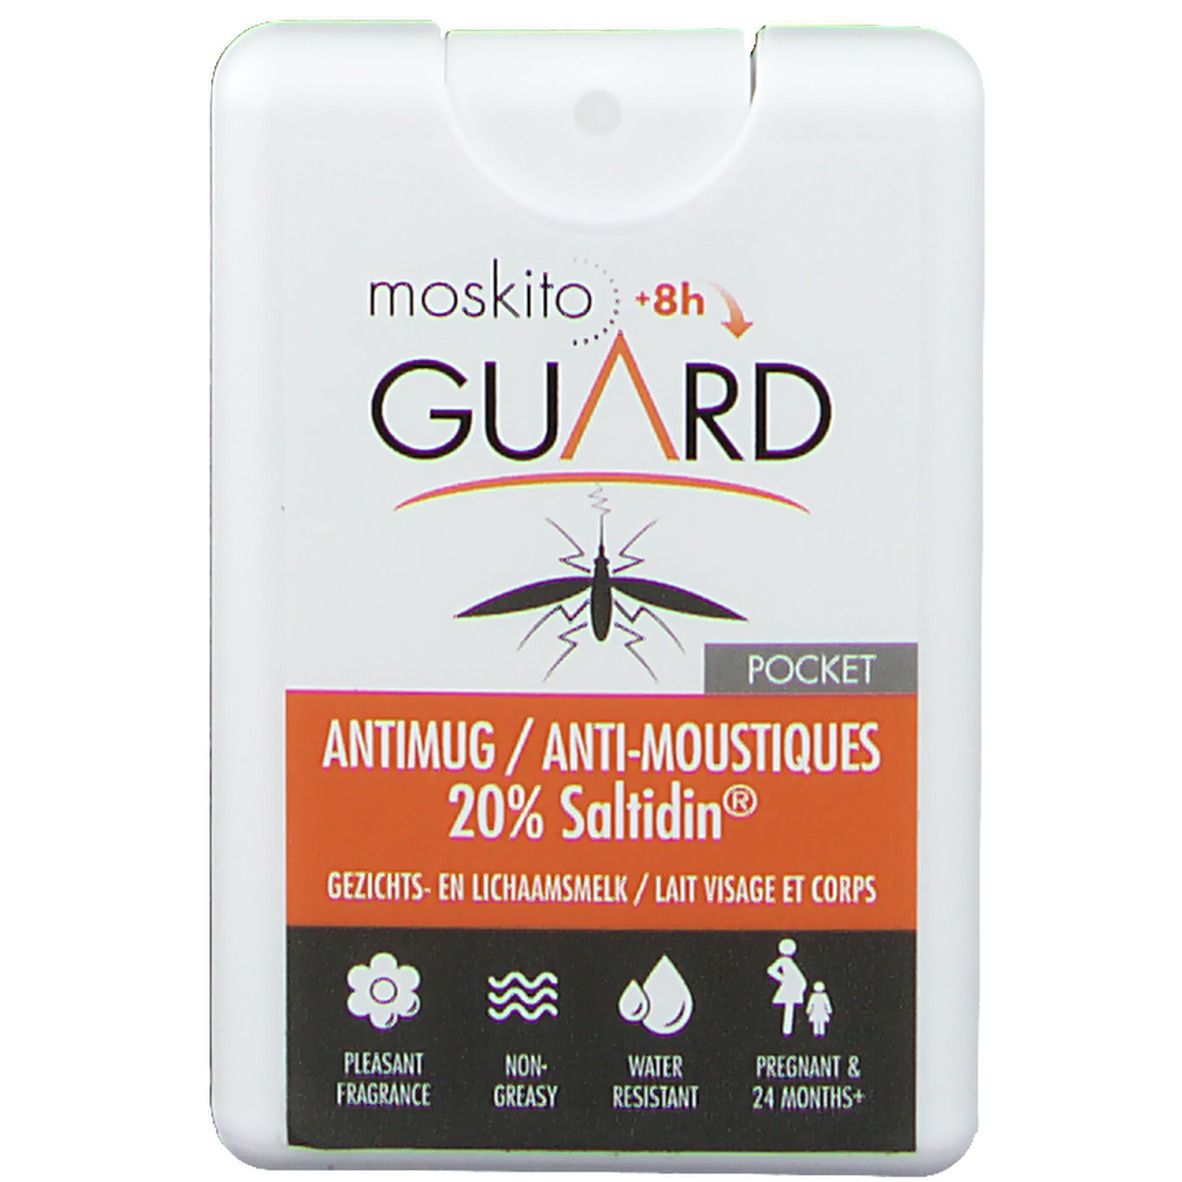 Moskito Guard Pocket